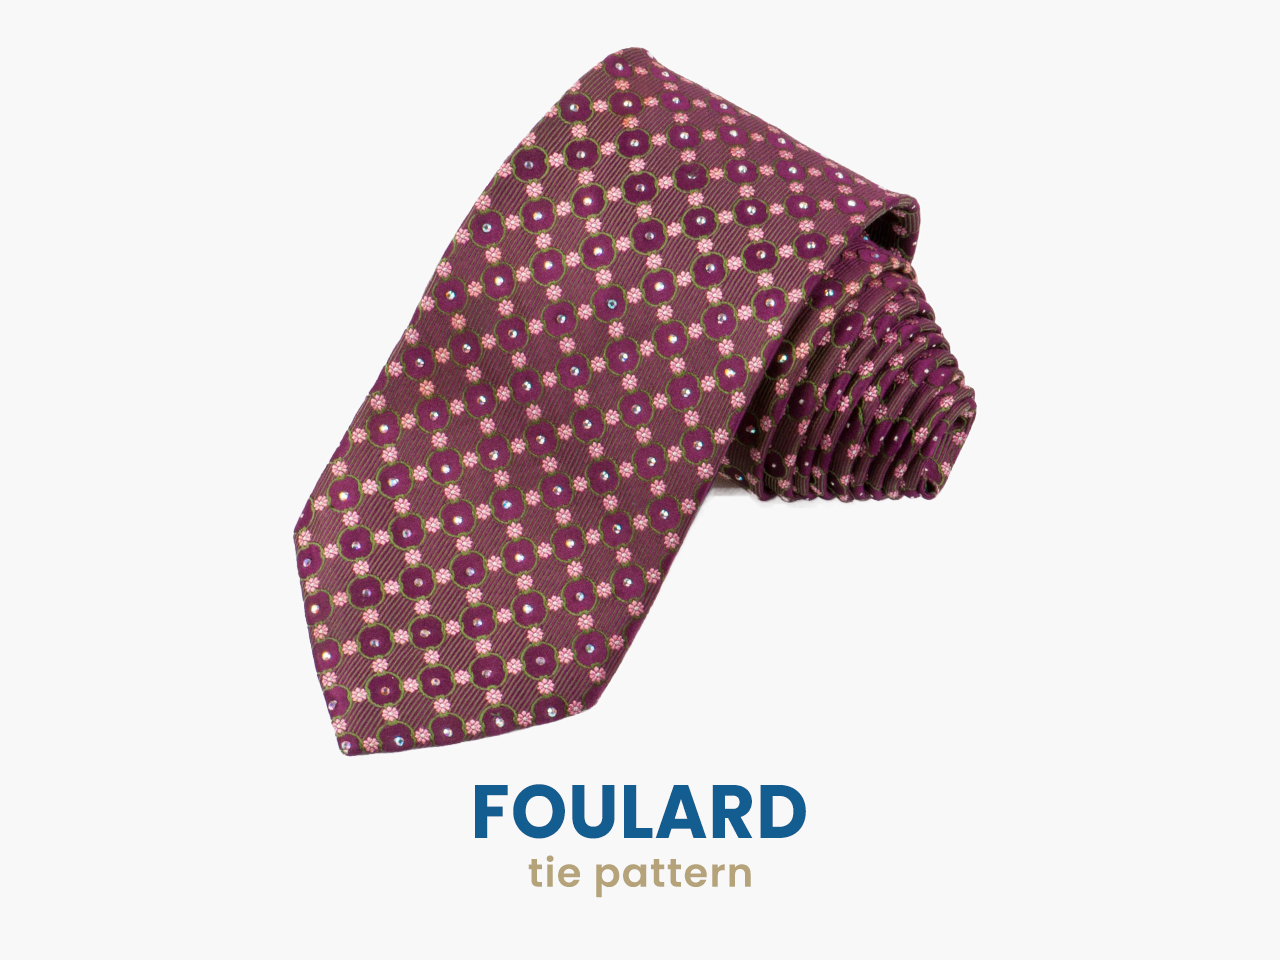 foulard tie pattern